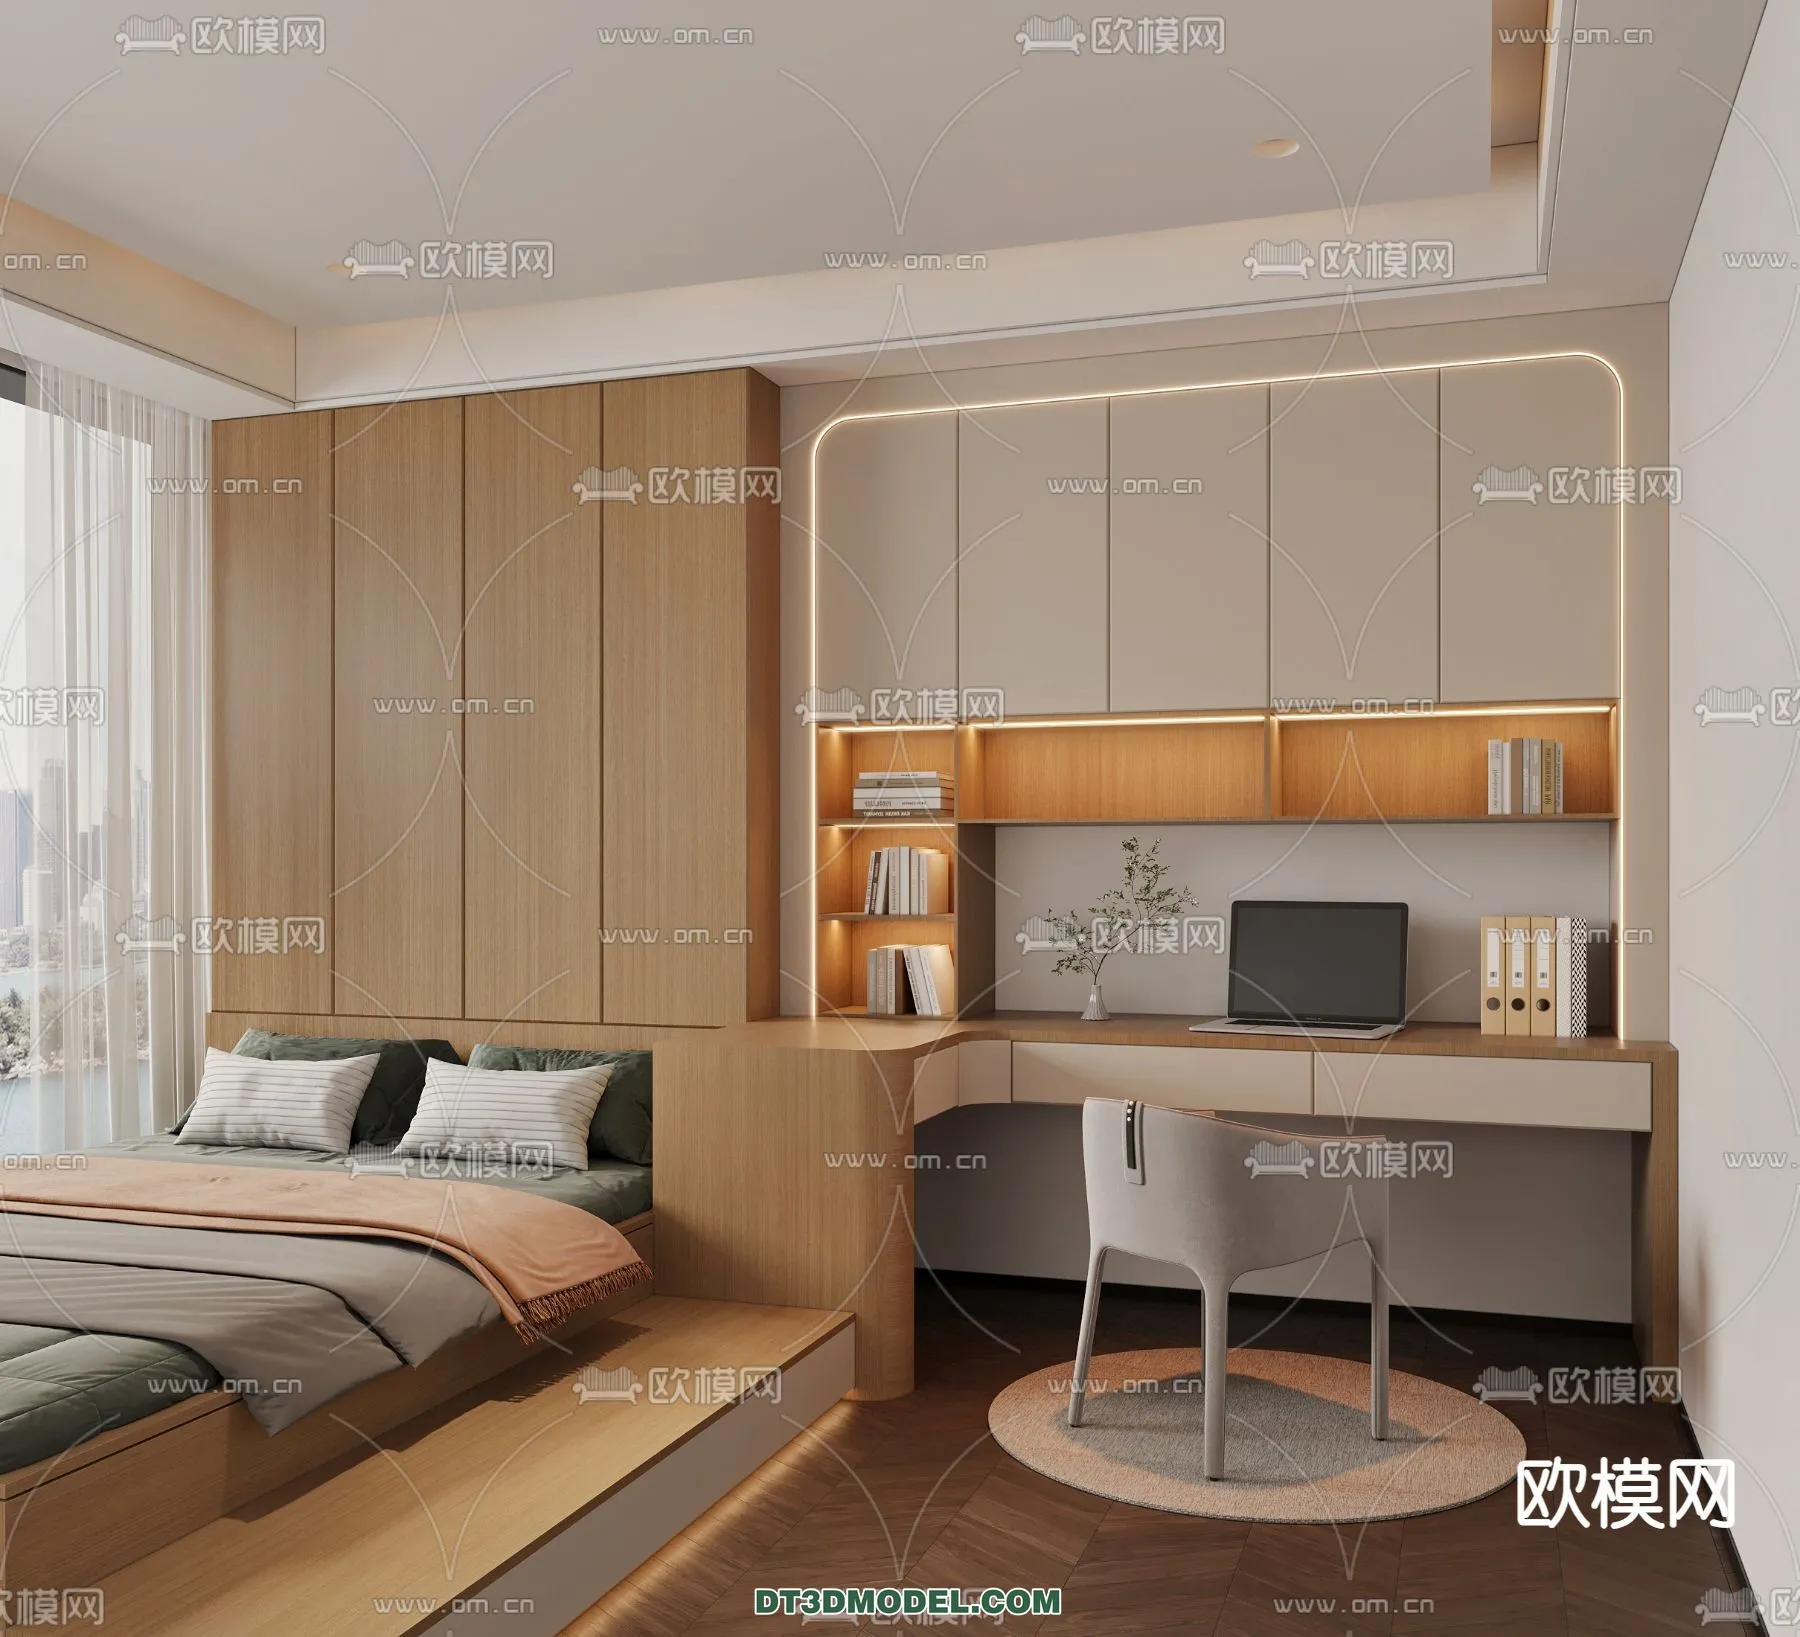 Tatami Bedroom – Japan Bedroom – 3D Scene – 063